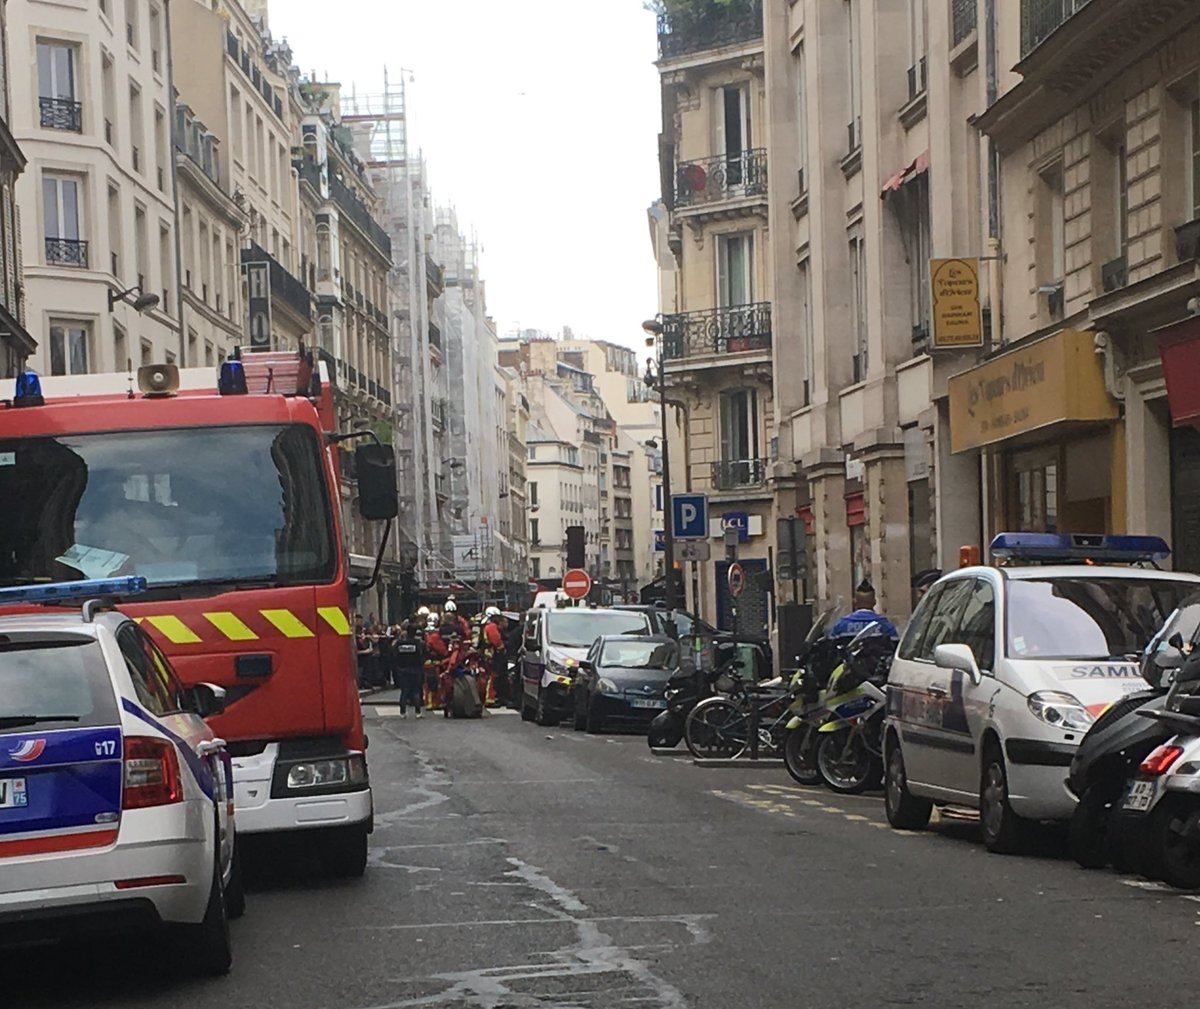 Захват заложников в Париже: мужчина облил людей бензином, двоим удалось сбежать